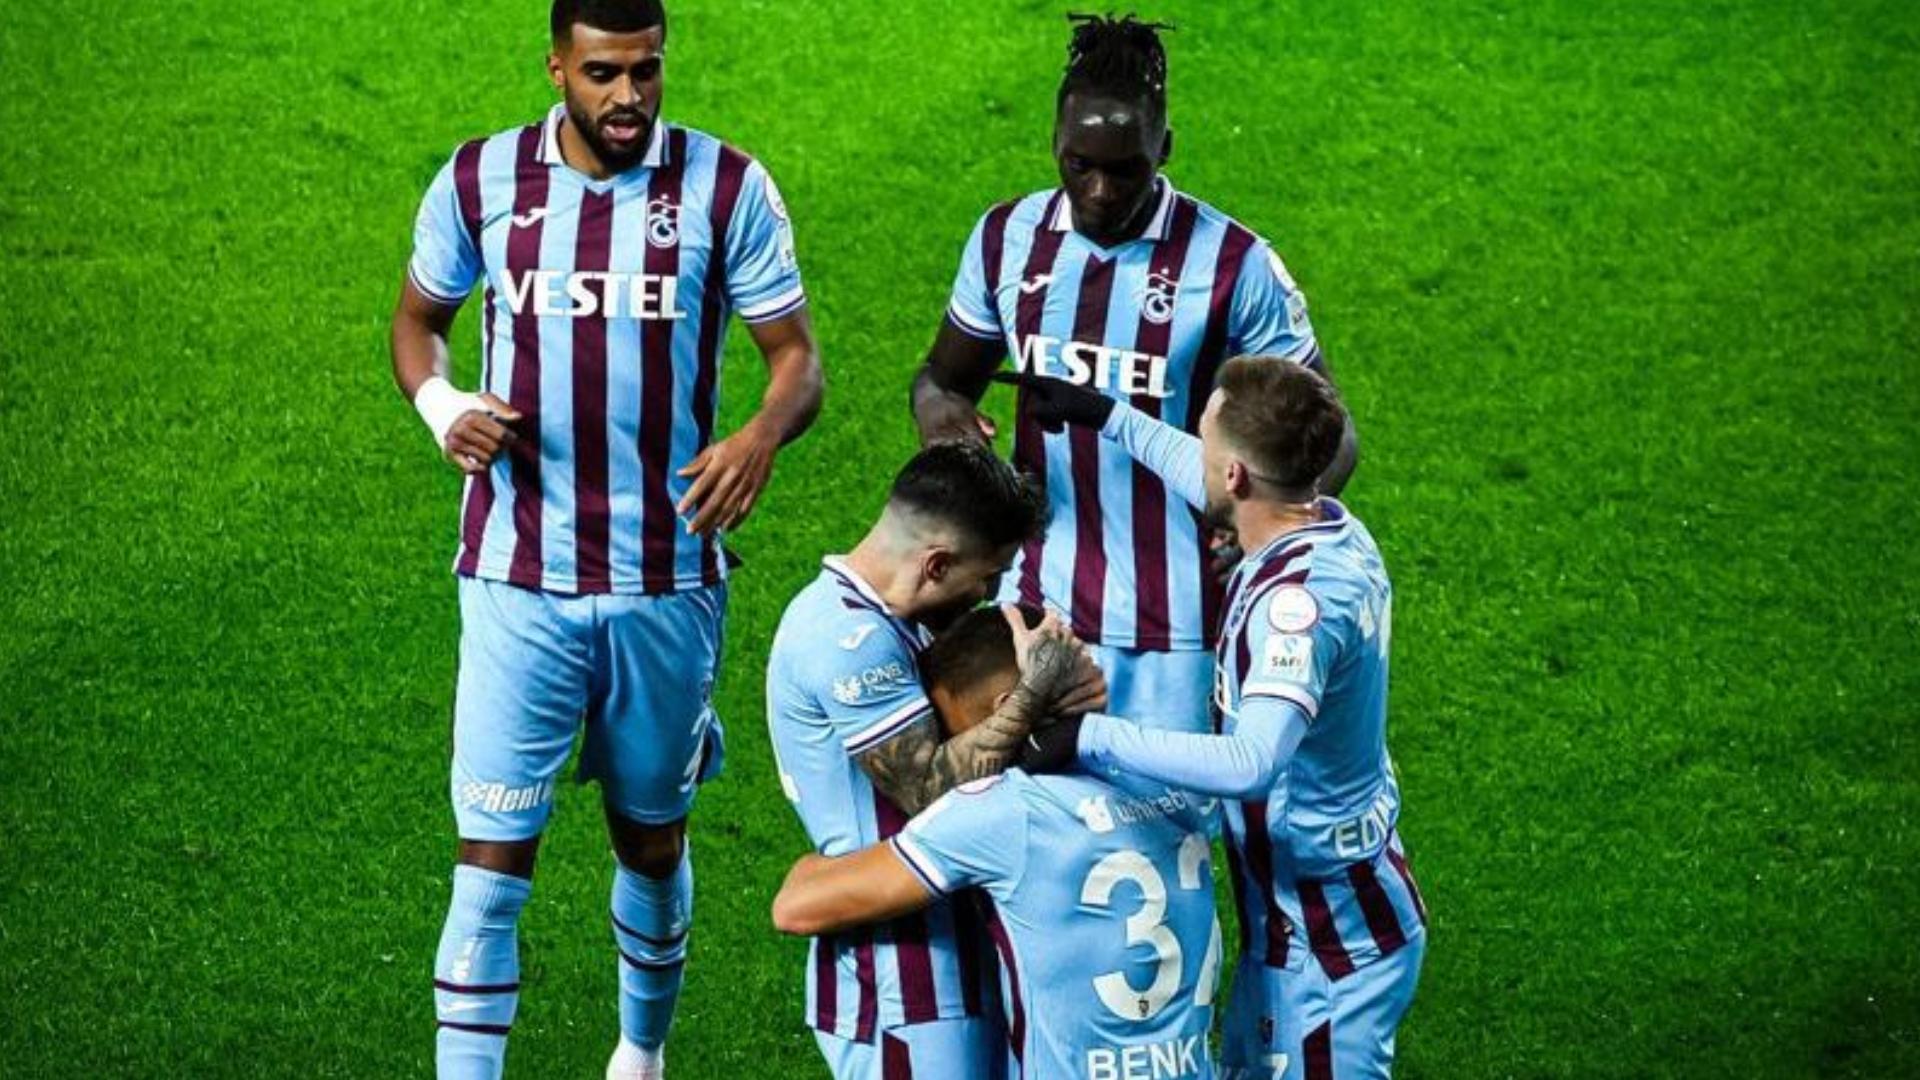 Super Lig - Trabzonspor 2 vs 1 Samsunspor